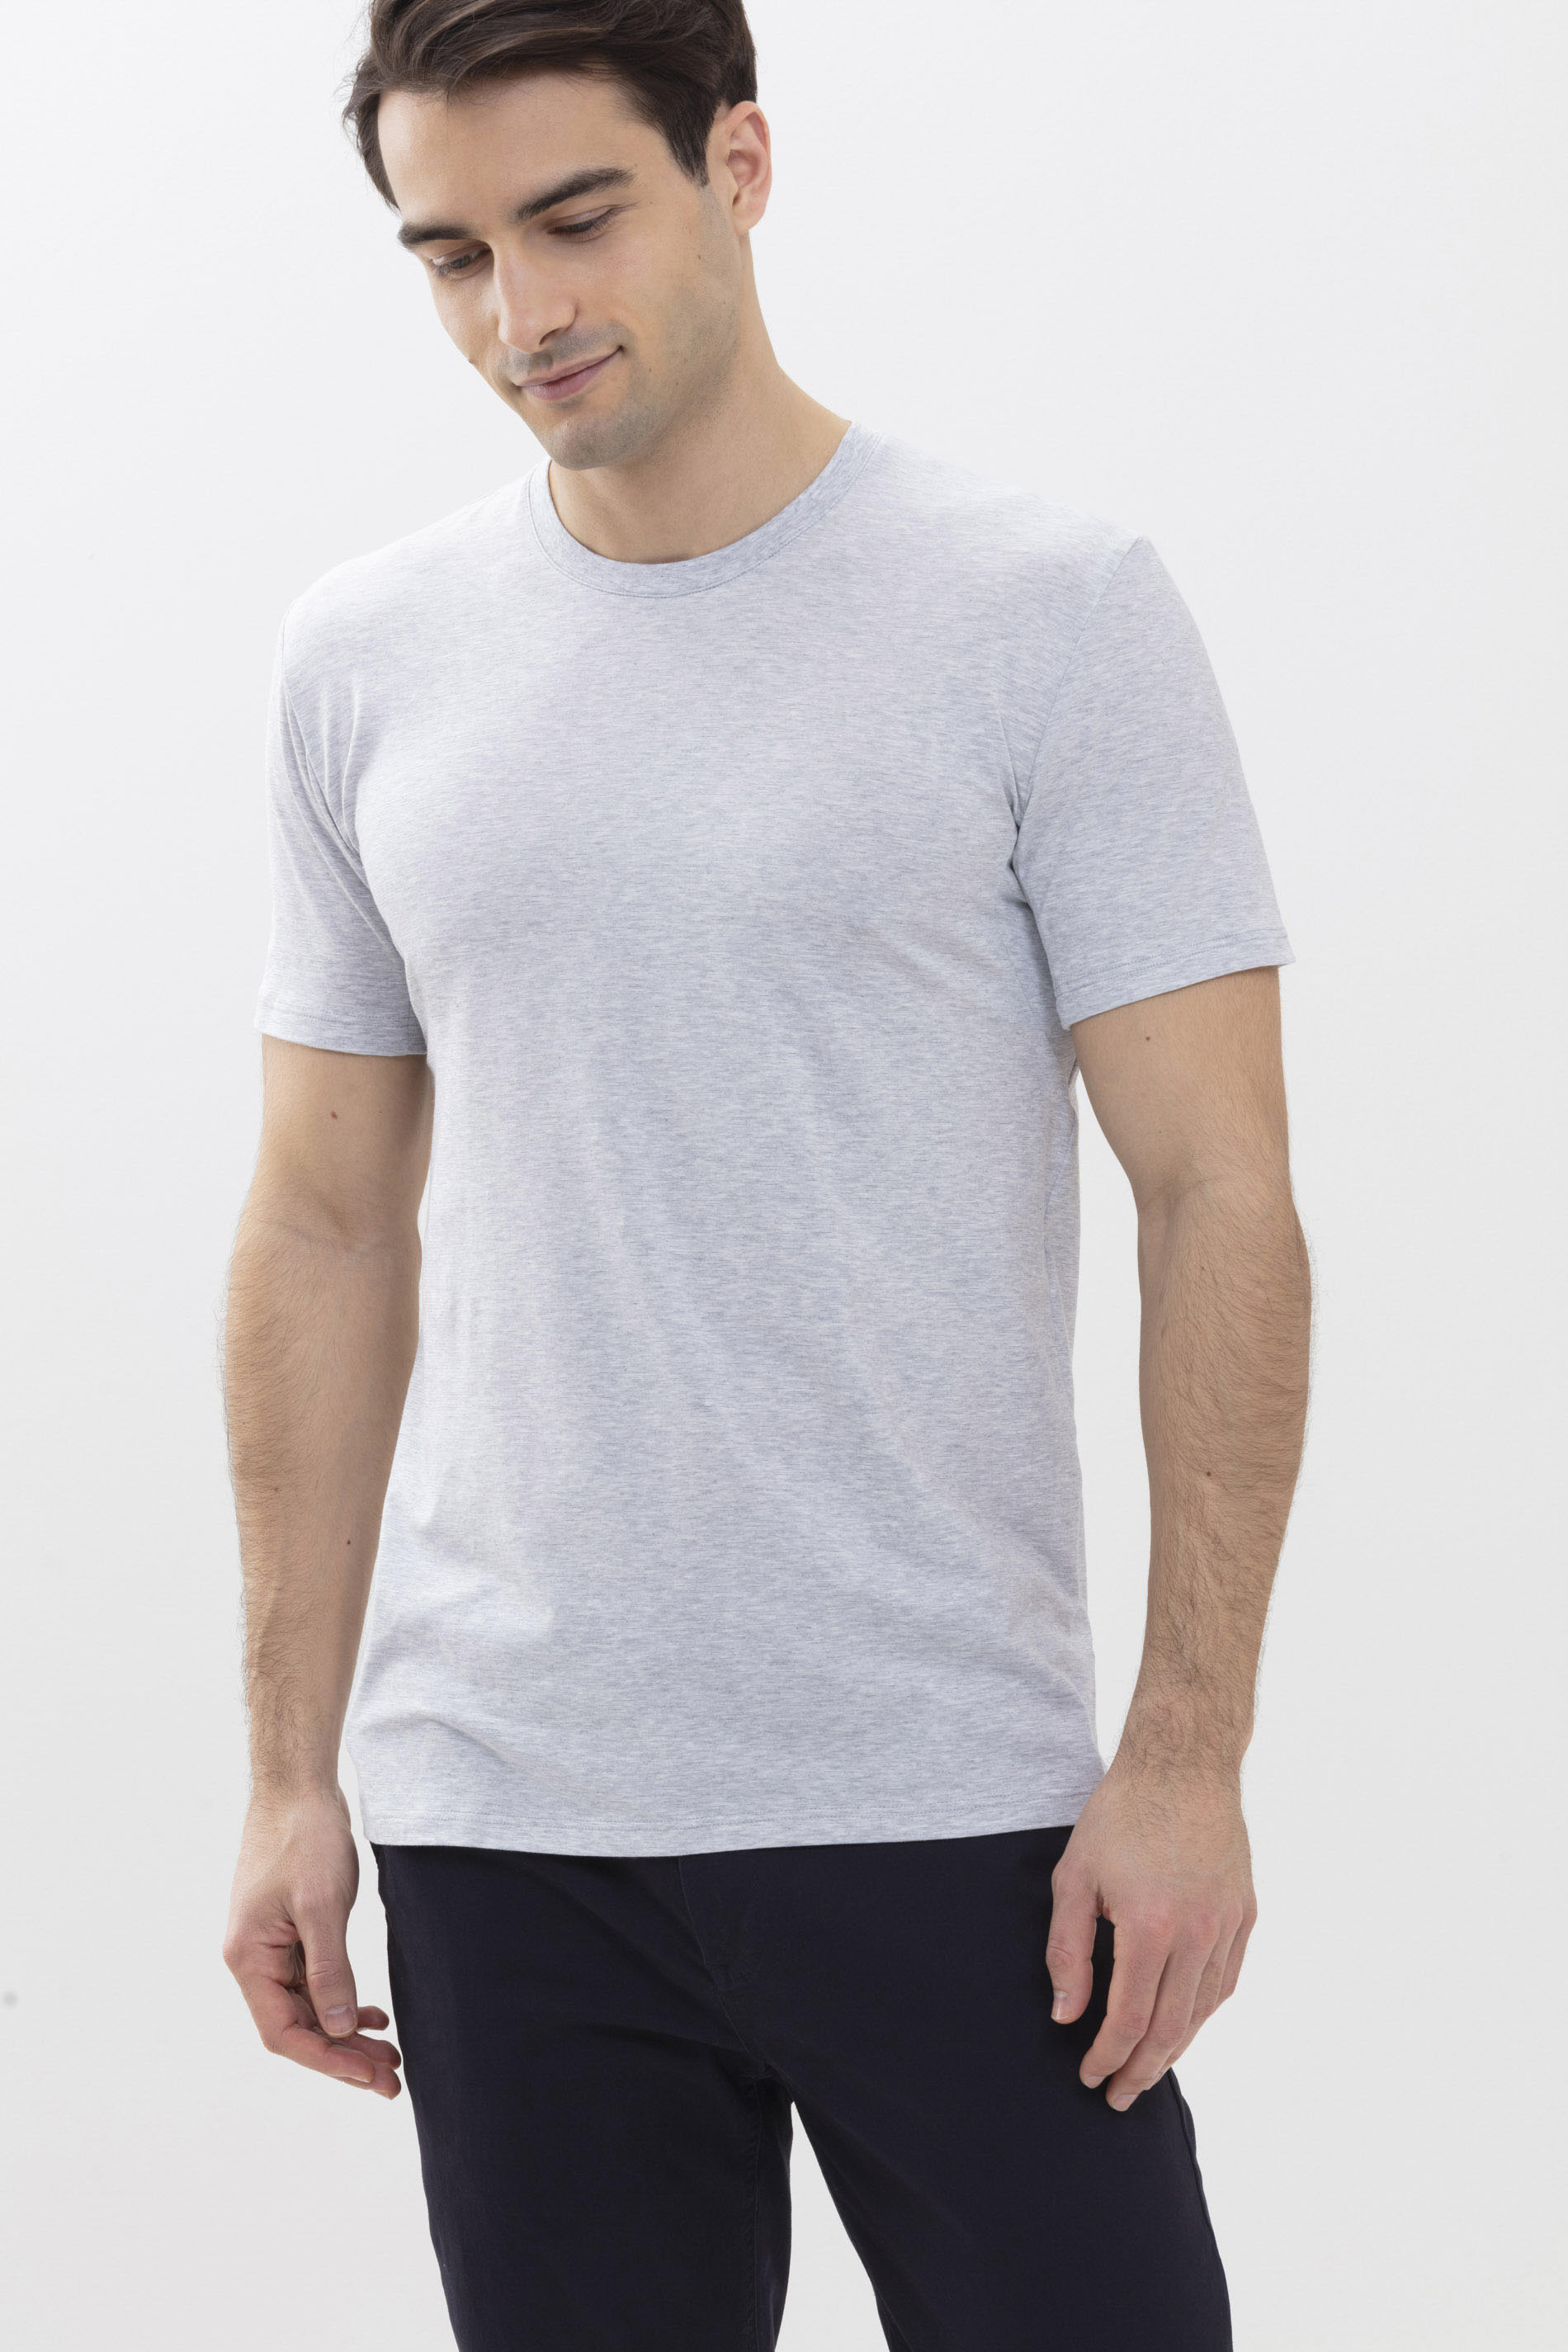 Hybride T-shirt Light Grey Melange Serie Hybrid T-Shirt Festlegen | mey®